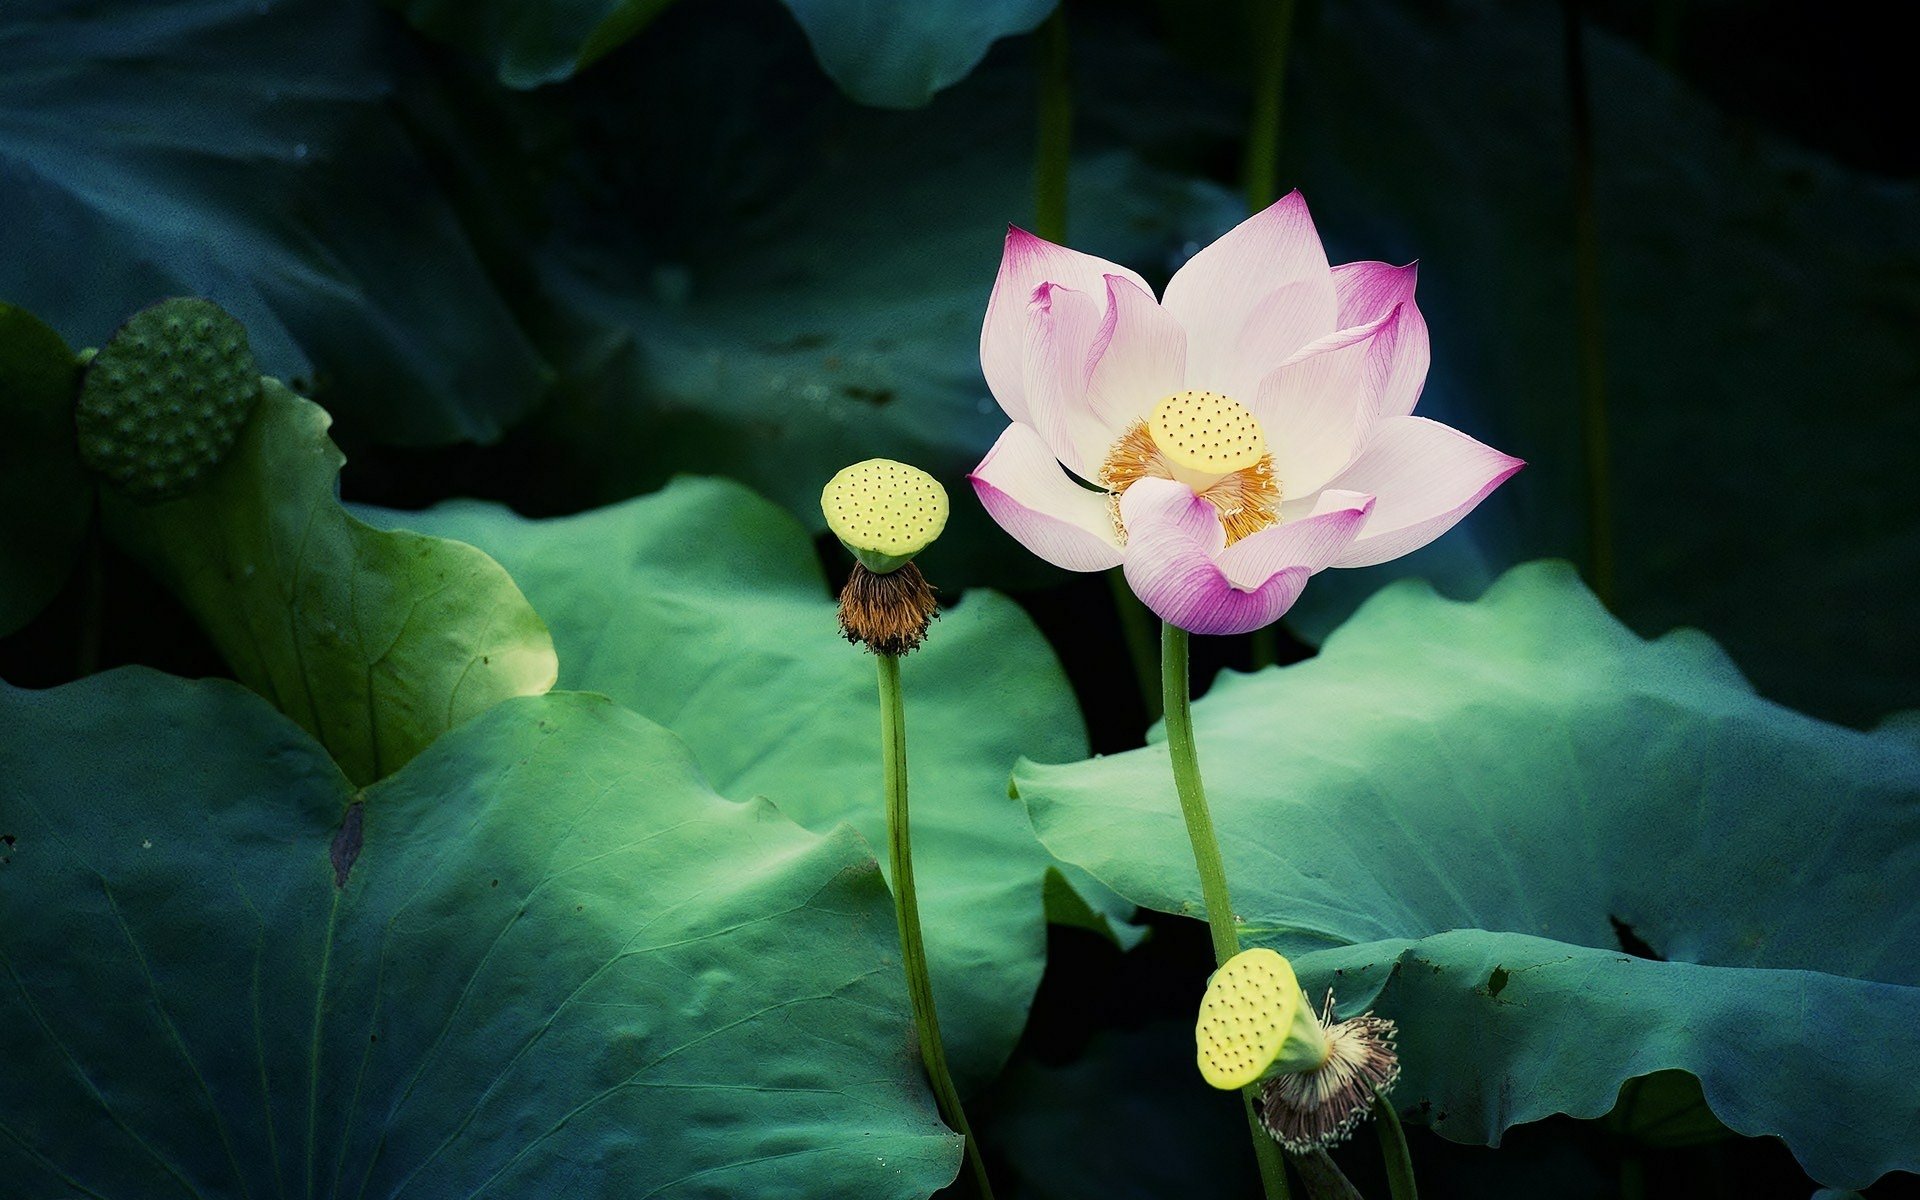 Lotus HD sẽ đem đến cho bạn trải nghiệm tuyệt vời với những hình ảnh hoa sen tinh tế và đẹp đến sửng sốt. Hãy chiêm ngưỡng vẻ đẹp tuyệt vời của Hoa Sen, một trong những biểu tượng đặc trưng của nền văn hóa Việt Nam.